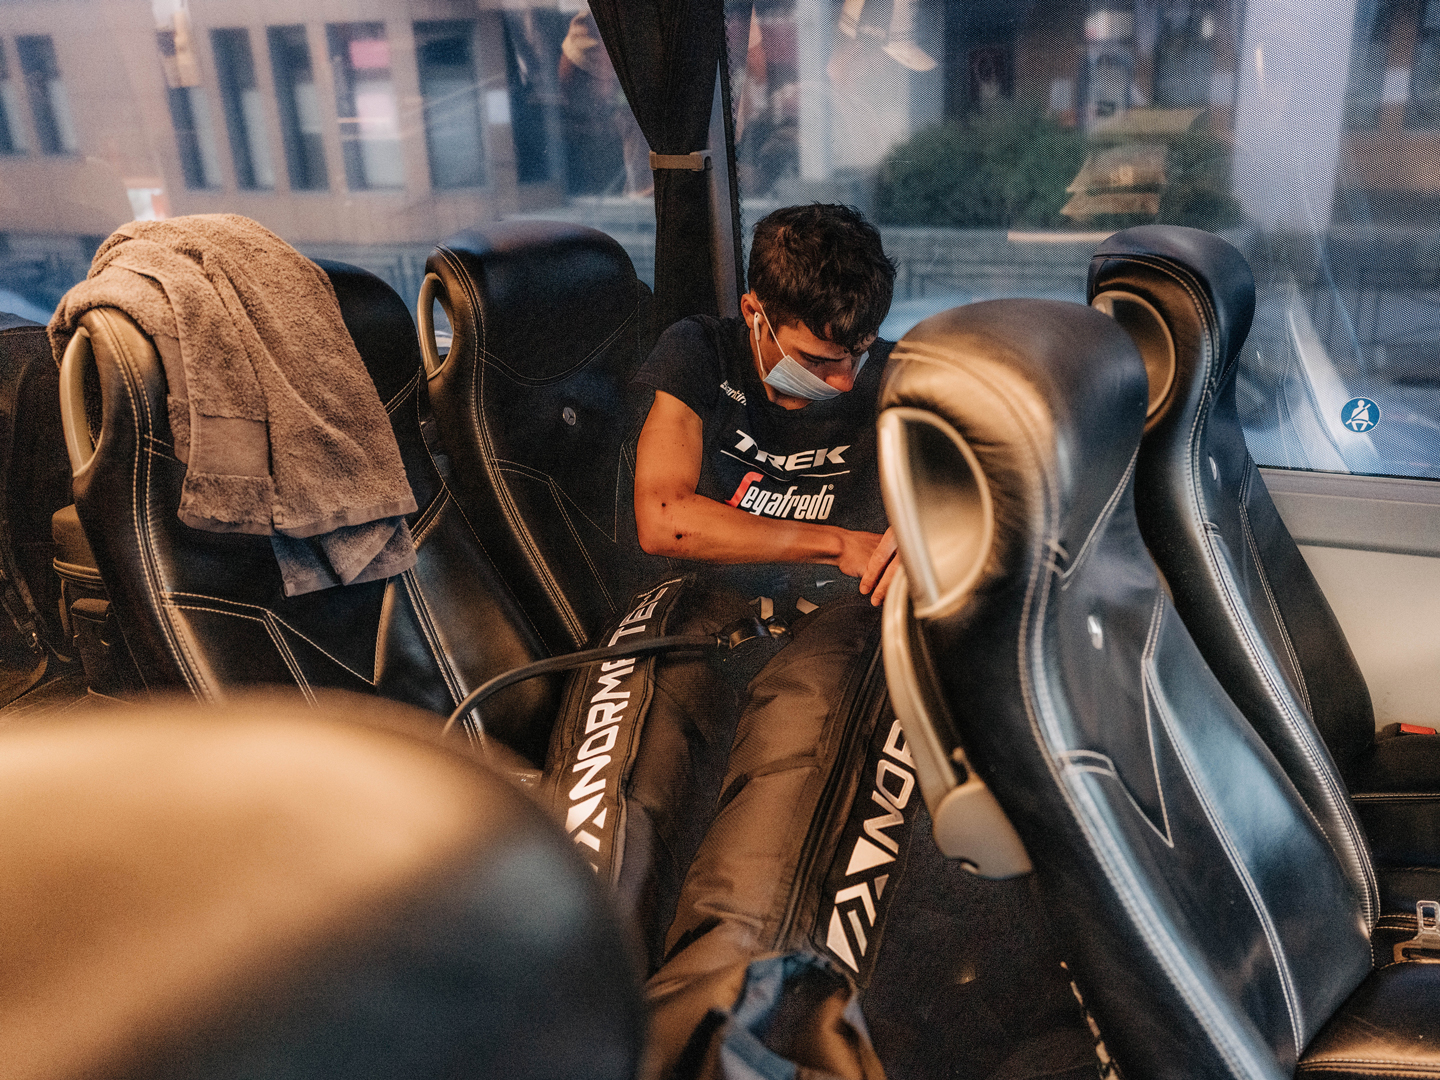 Trek-Segafredo -tallin urheilija palautumassa tiimin bussissa